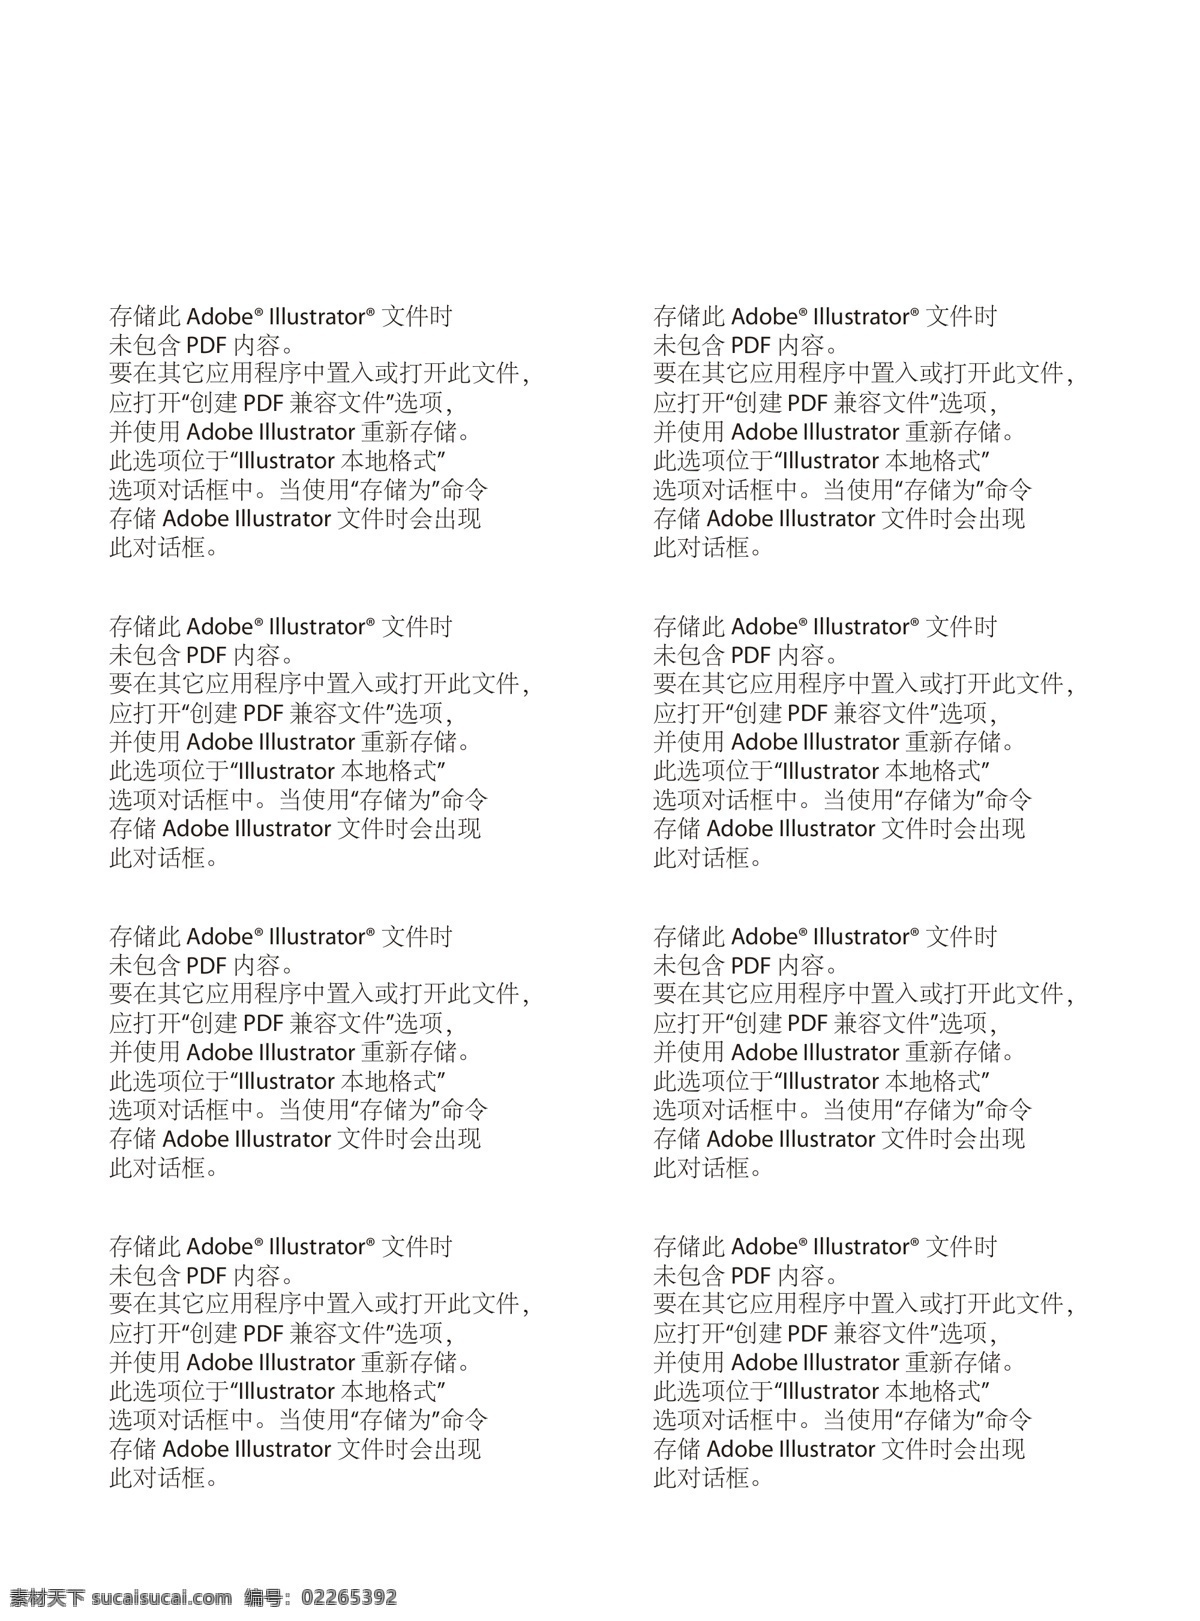 5s iphone iphone5c iphone5s 联通 苹果 苹果海报 海报 矢量 模板下载 5c 中国联通 预约 预约海报 其他海报设计